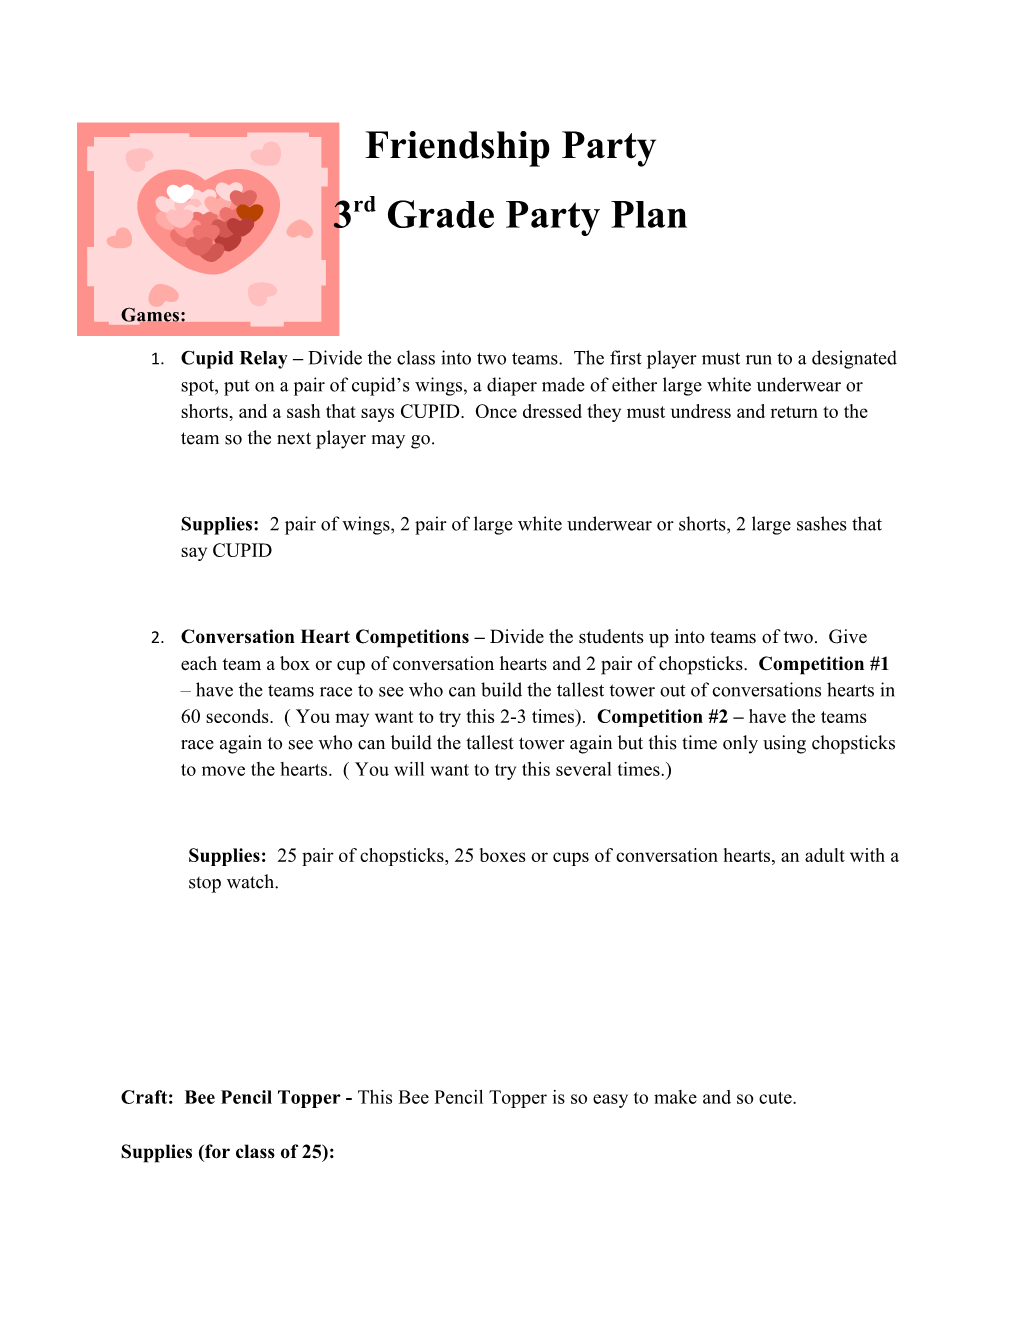 3Rd Grade Party Plan